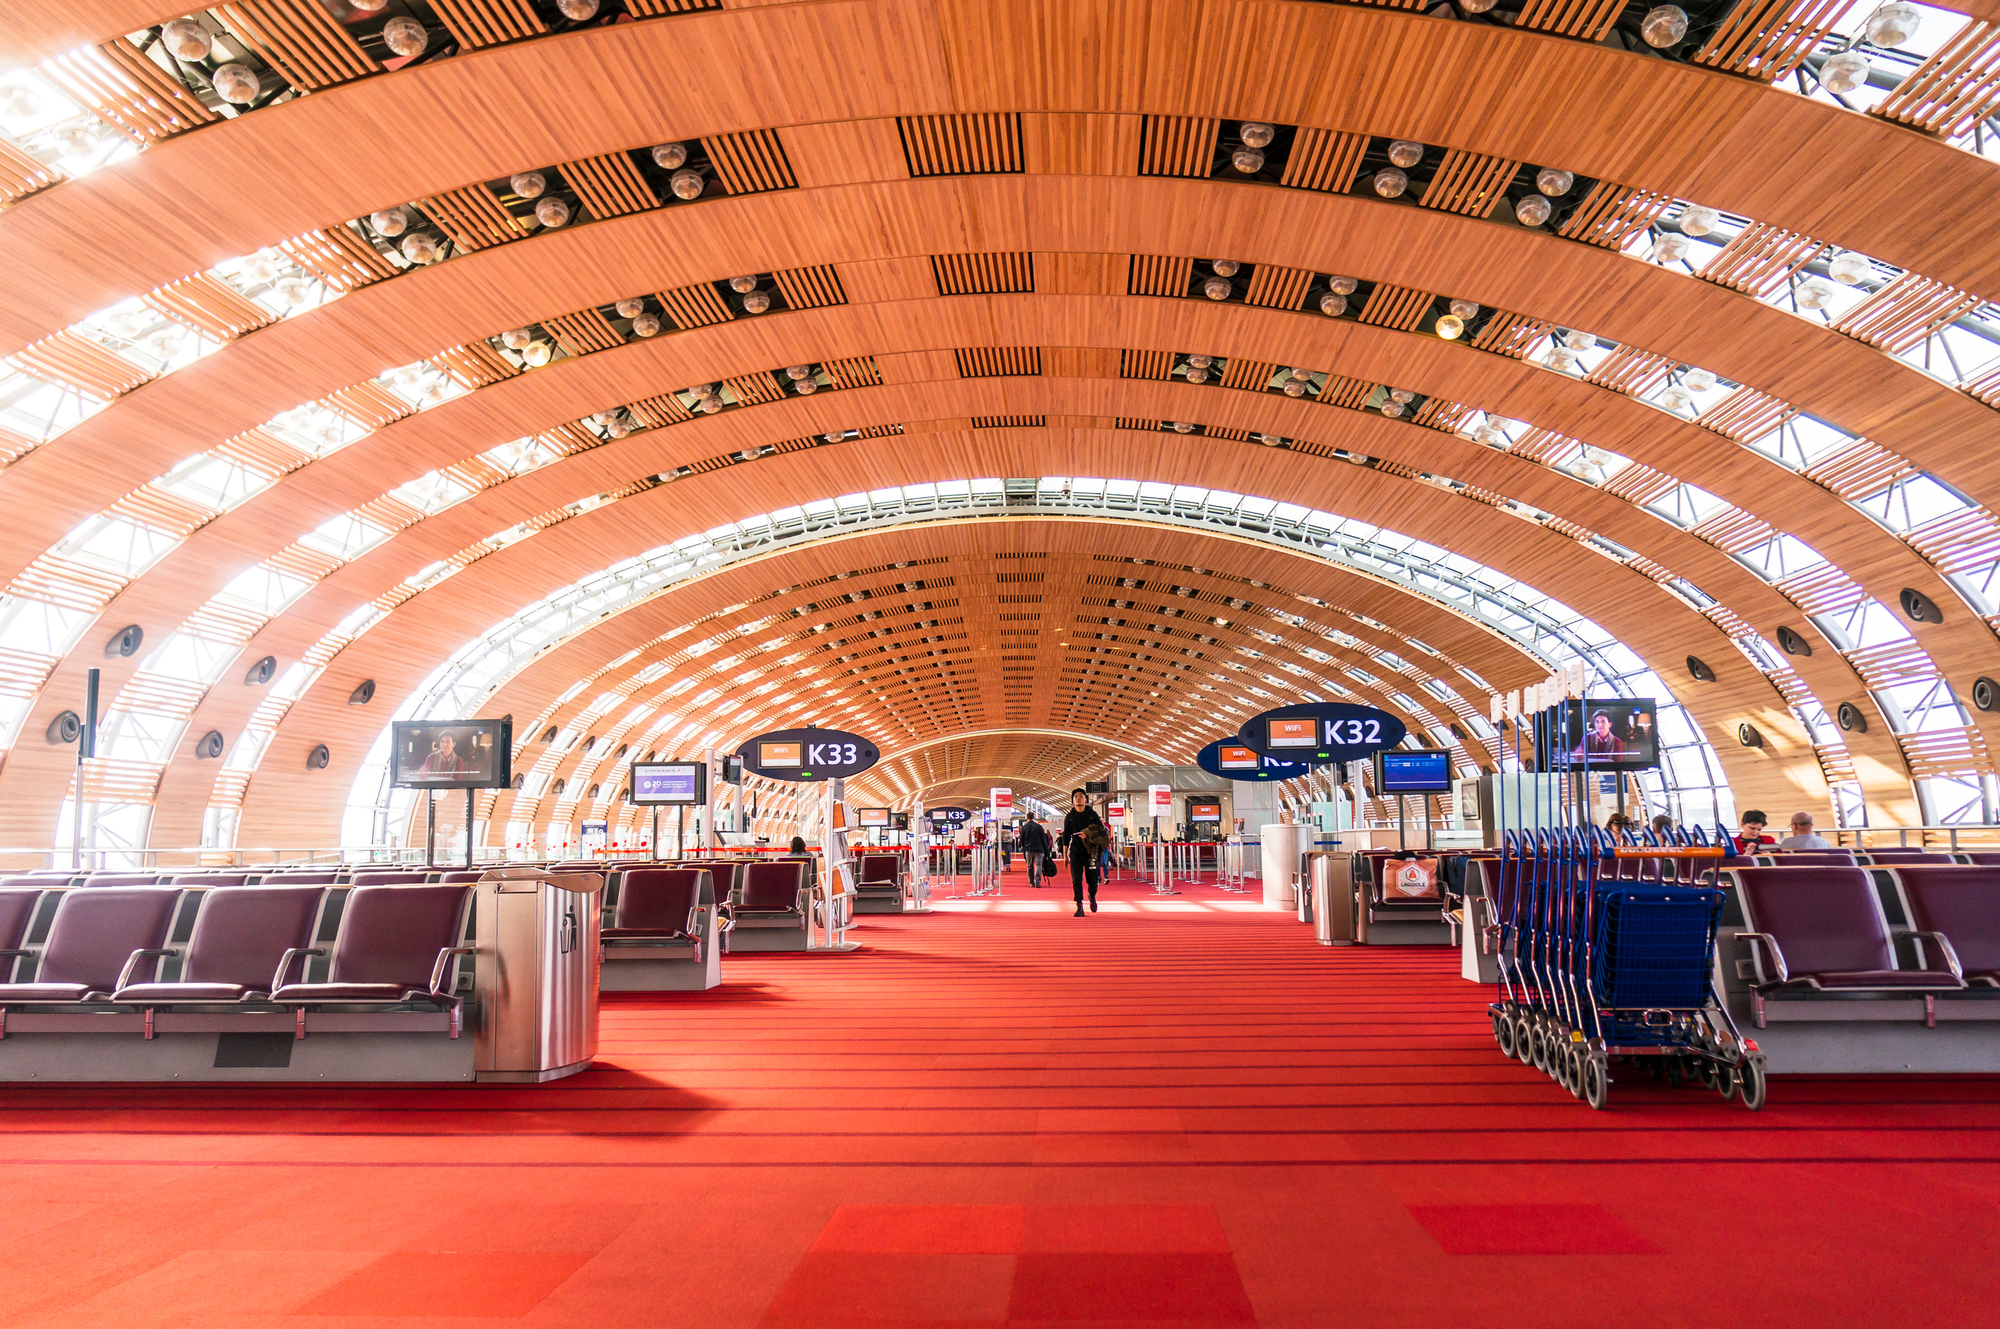 L'aéroport de Paris CDG, à cause des restrictions de voyages sur long-courrier, est l'aéroport français qui a le plus souffert en 2021 - DR : Depositphotos.com, gilmanshin